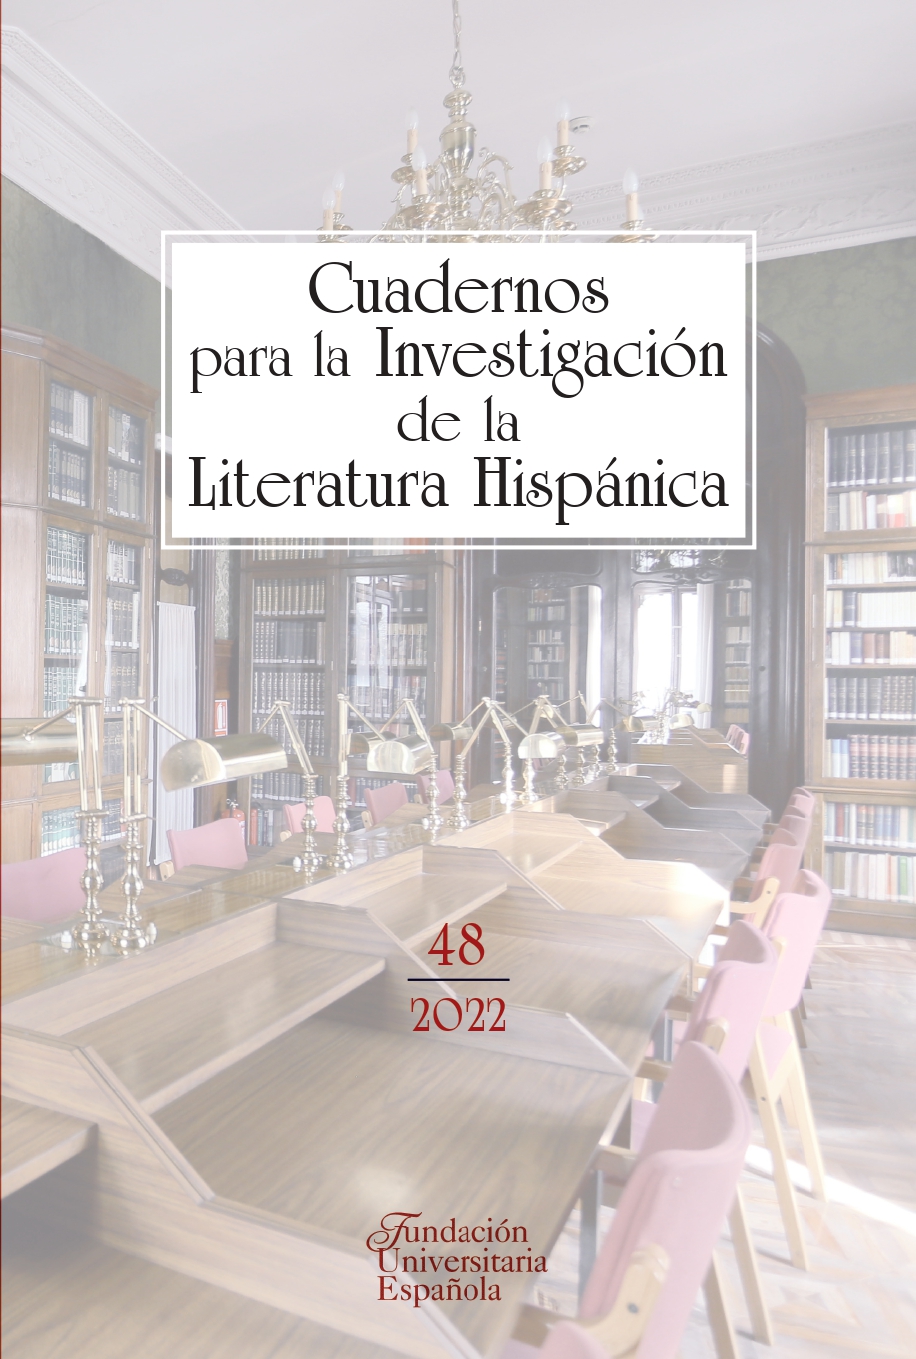 Cuadernos para investigación de la literatura hispánica - Dialnet